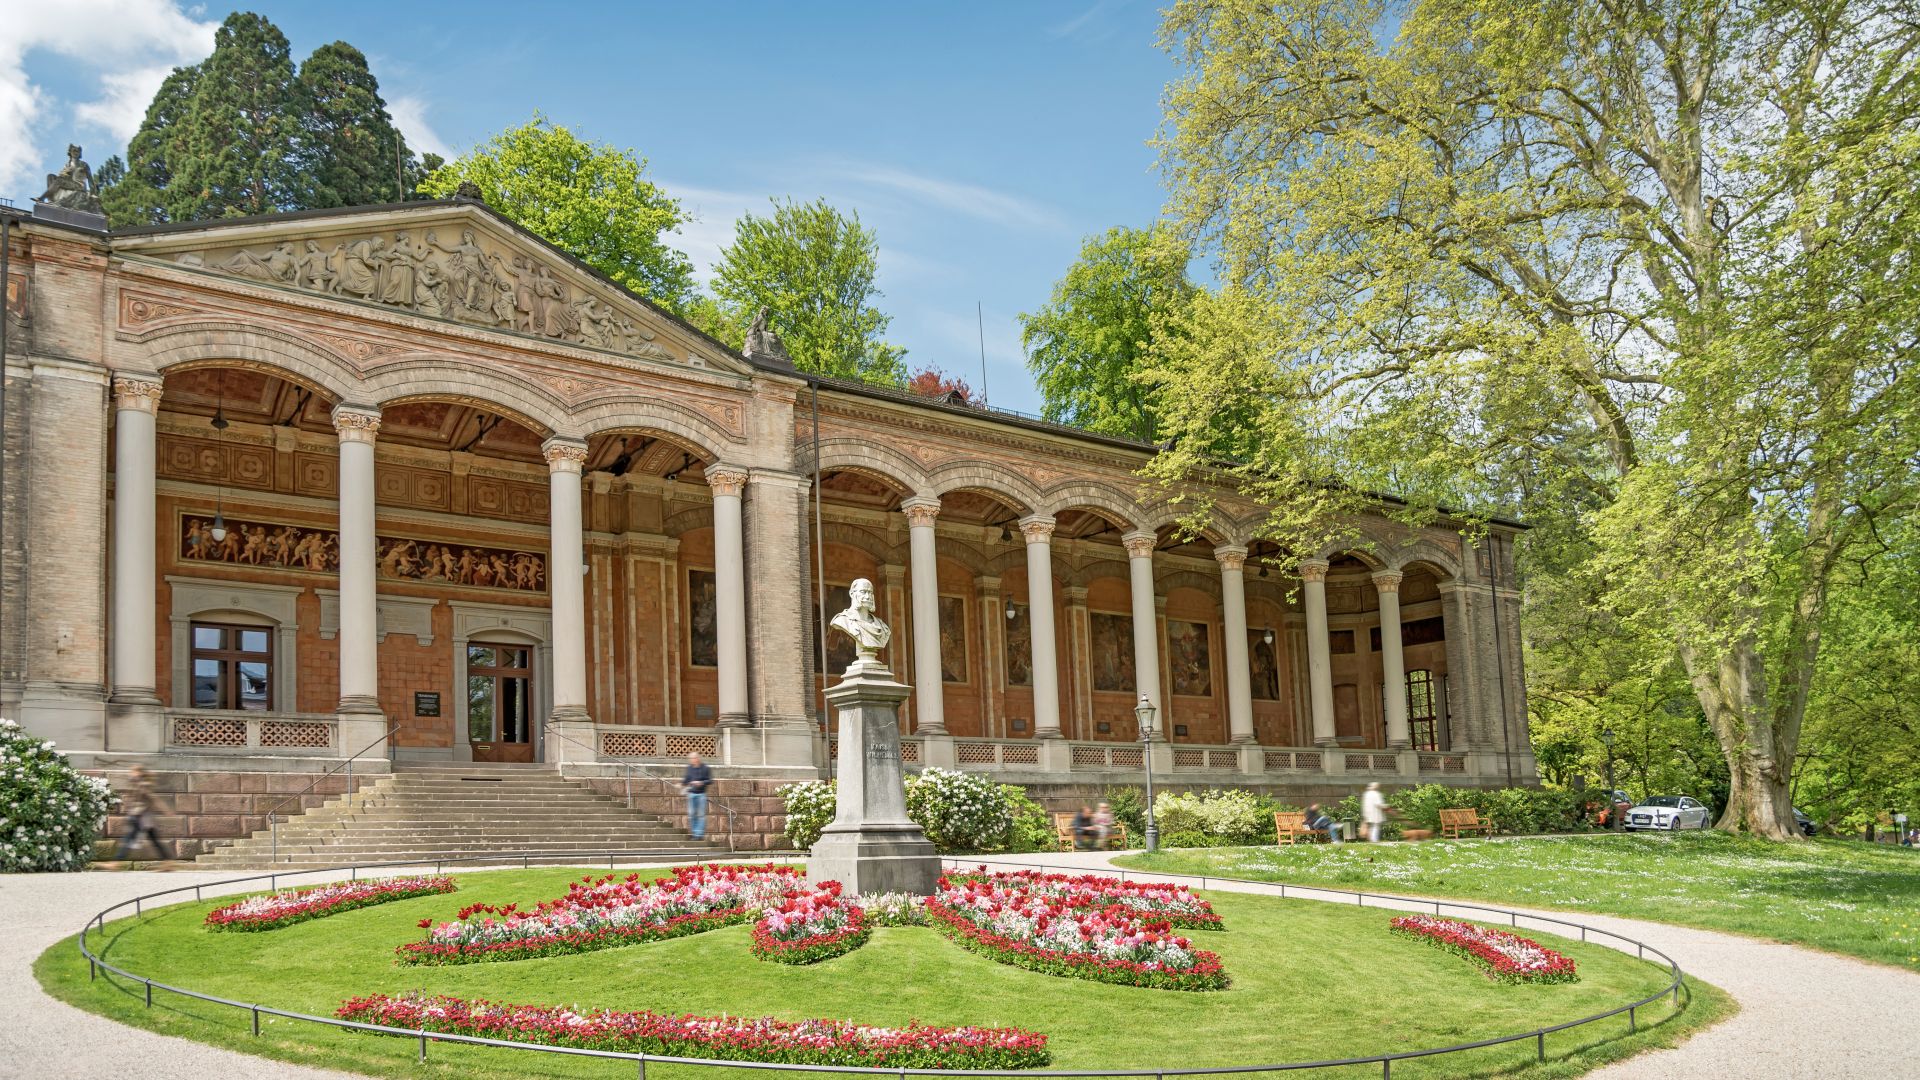 Baden-Baden: Trinkhalle building with garden